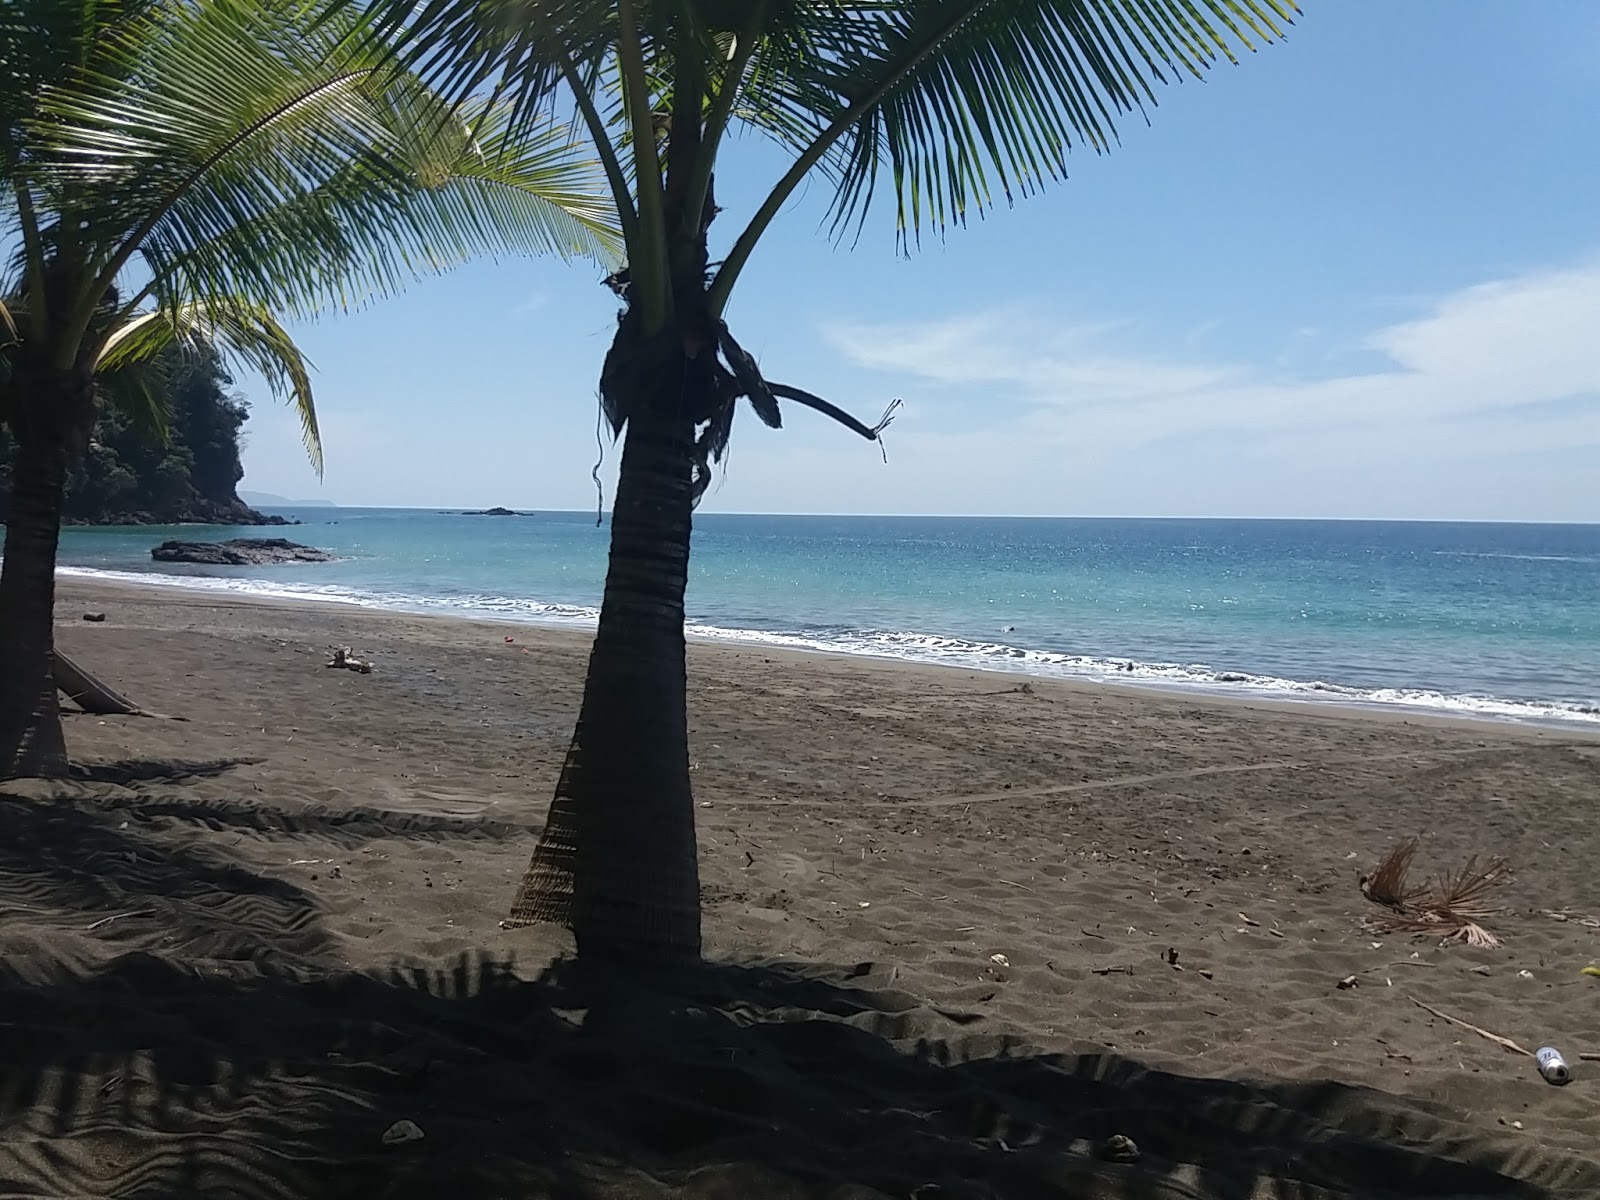 Playa Muerto'in fotoğrafı kısmen temiz temizlik seviyesi ile